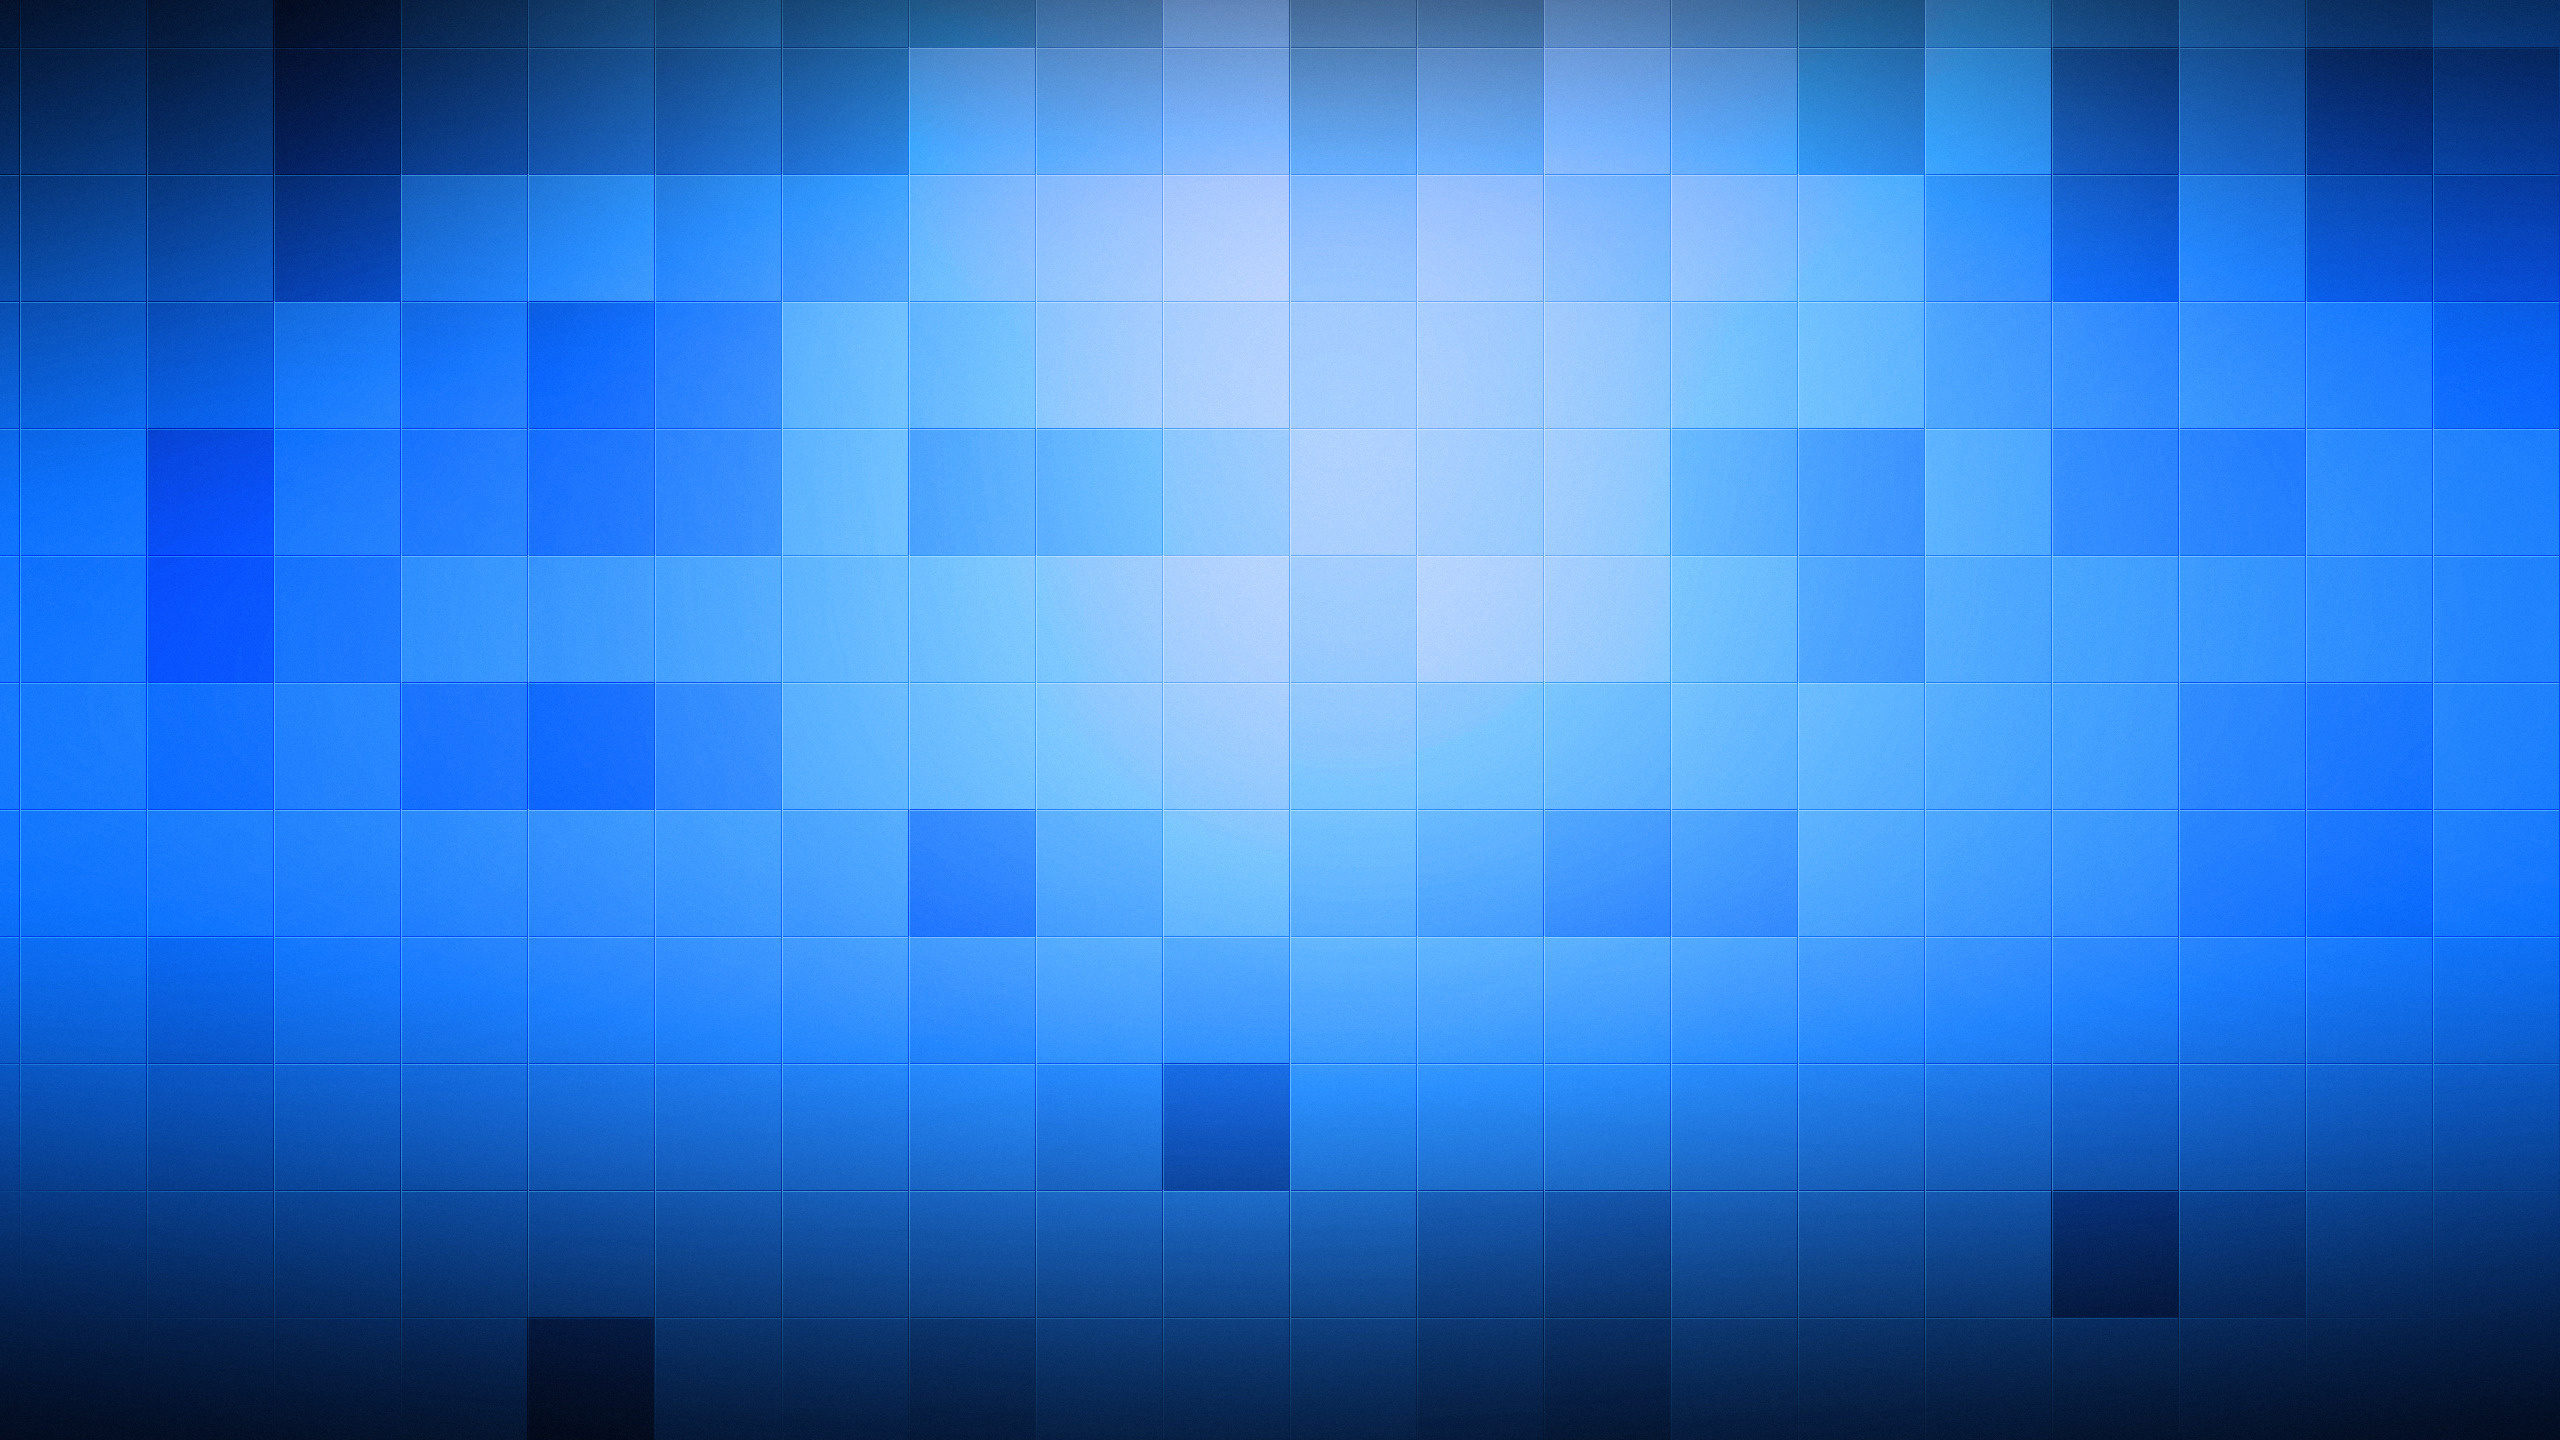 кубики, квадраты, кубы, текстуры, синий фон, обои, текстура